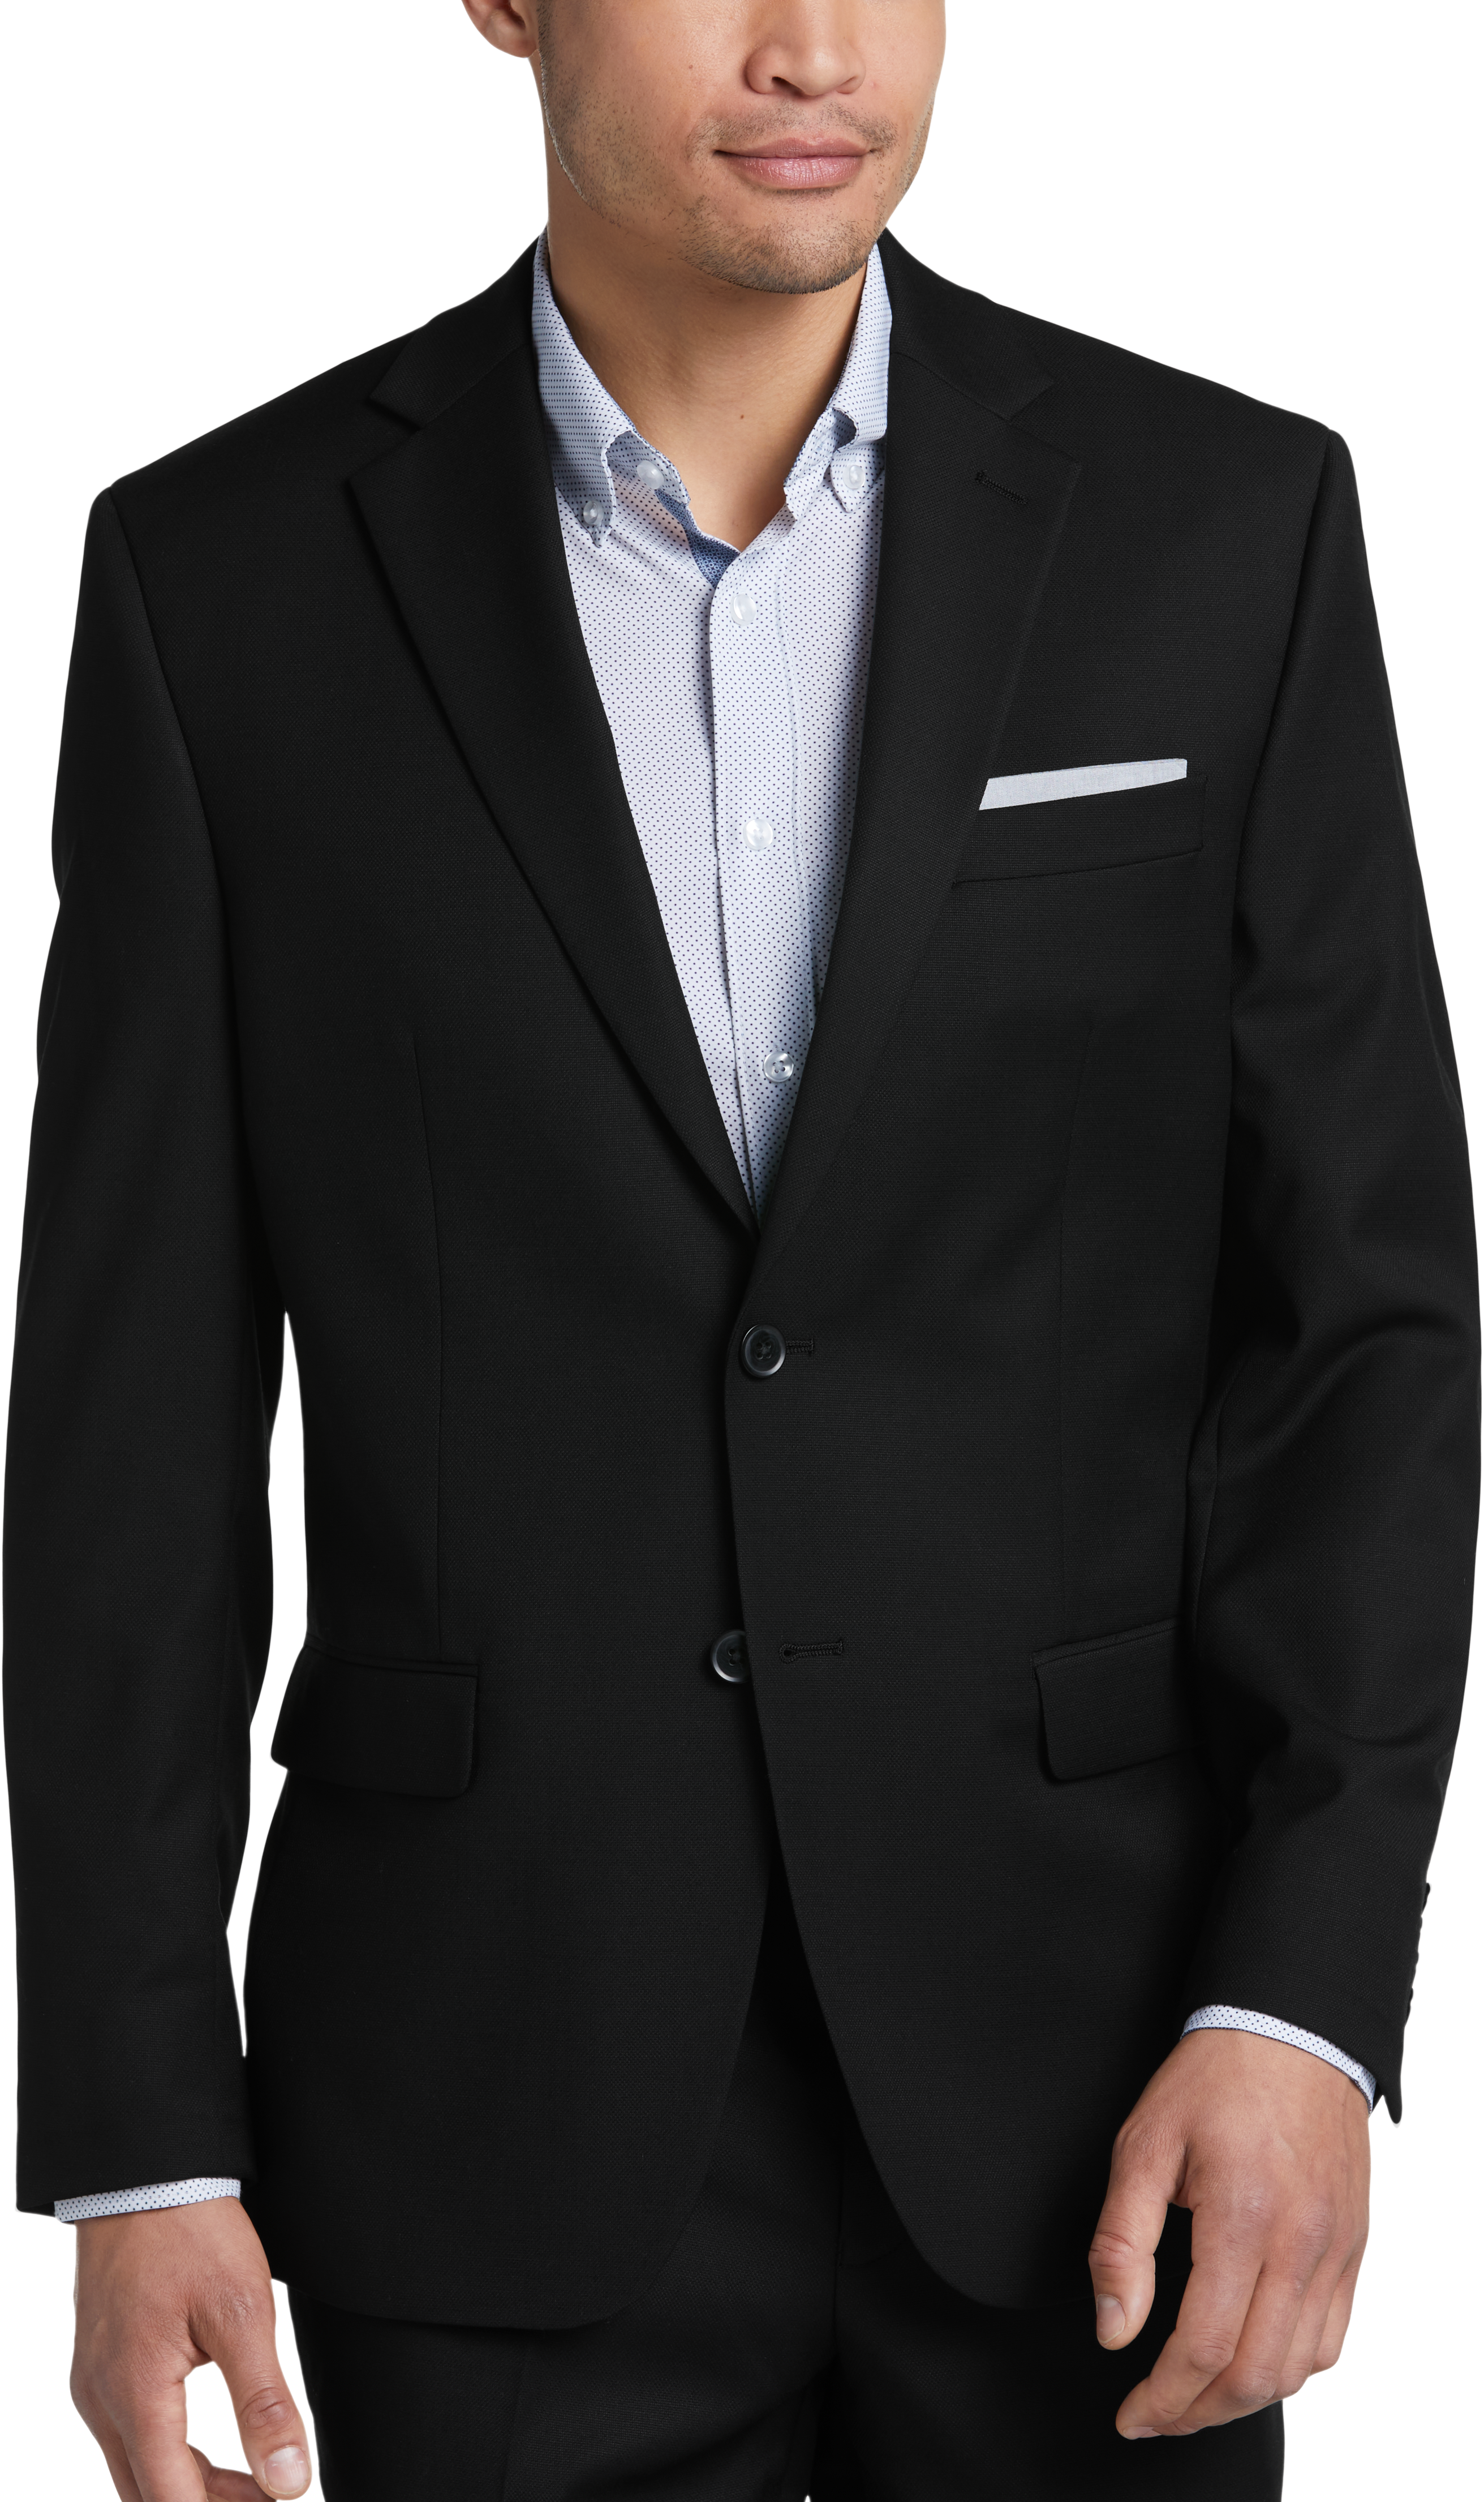 Michael Strahan Black Classic Fit Suit - - Men's Wearhouse